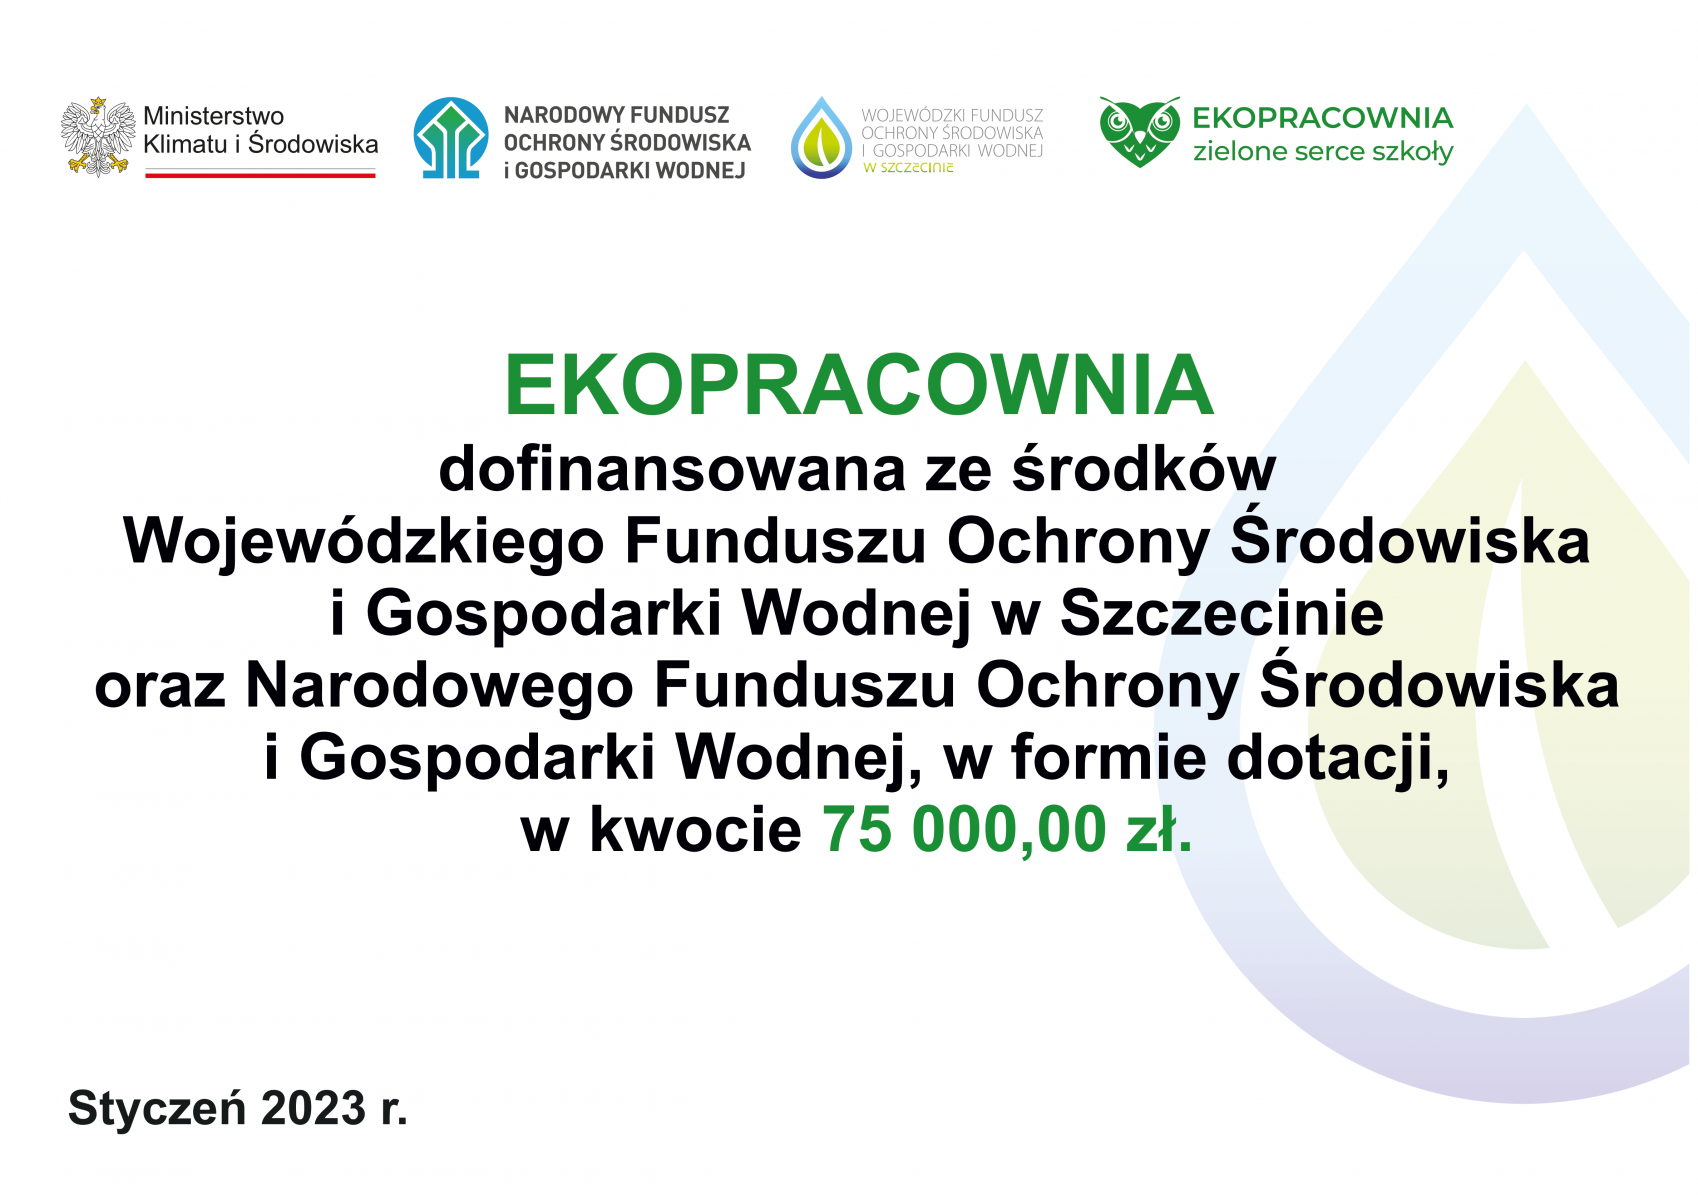 EKOPRACOWNIA dofinansowana ze środków Wojewódzkiego Funduszu Ochrony Środowiska i Gospodarki Wodnej w Szczecinie oraz Narodowego Funduszu Ochrony Środowiska i Gospodarki Wodnej